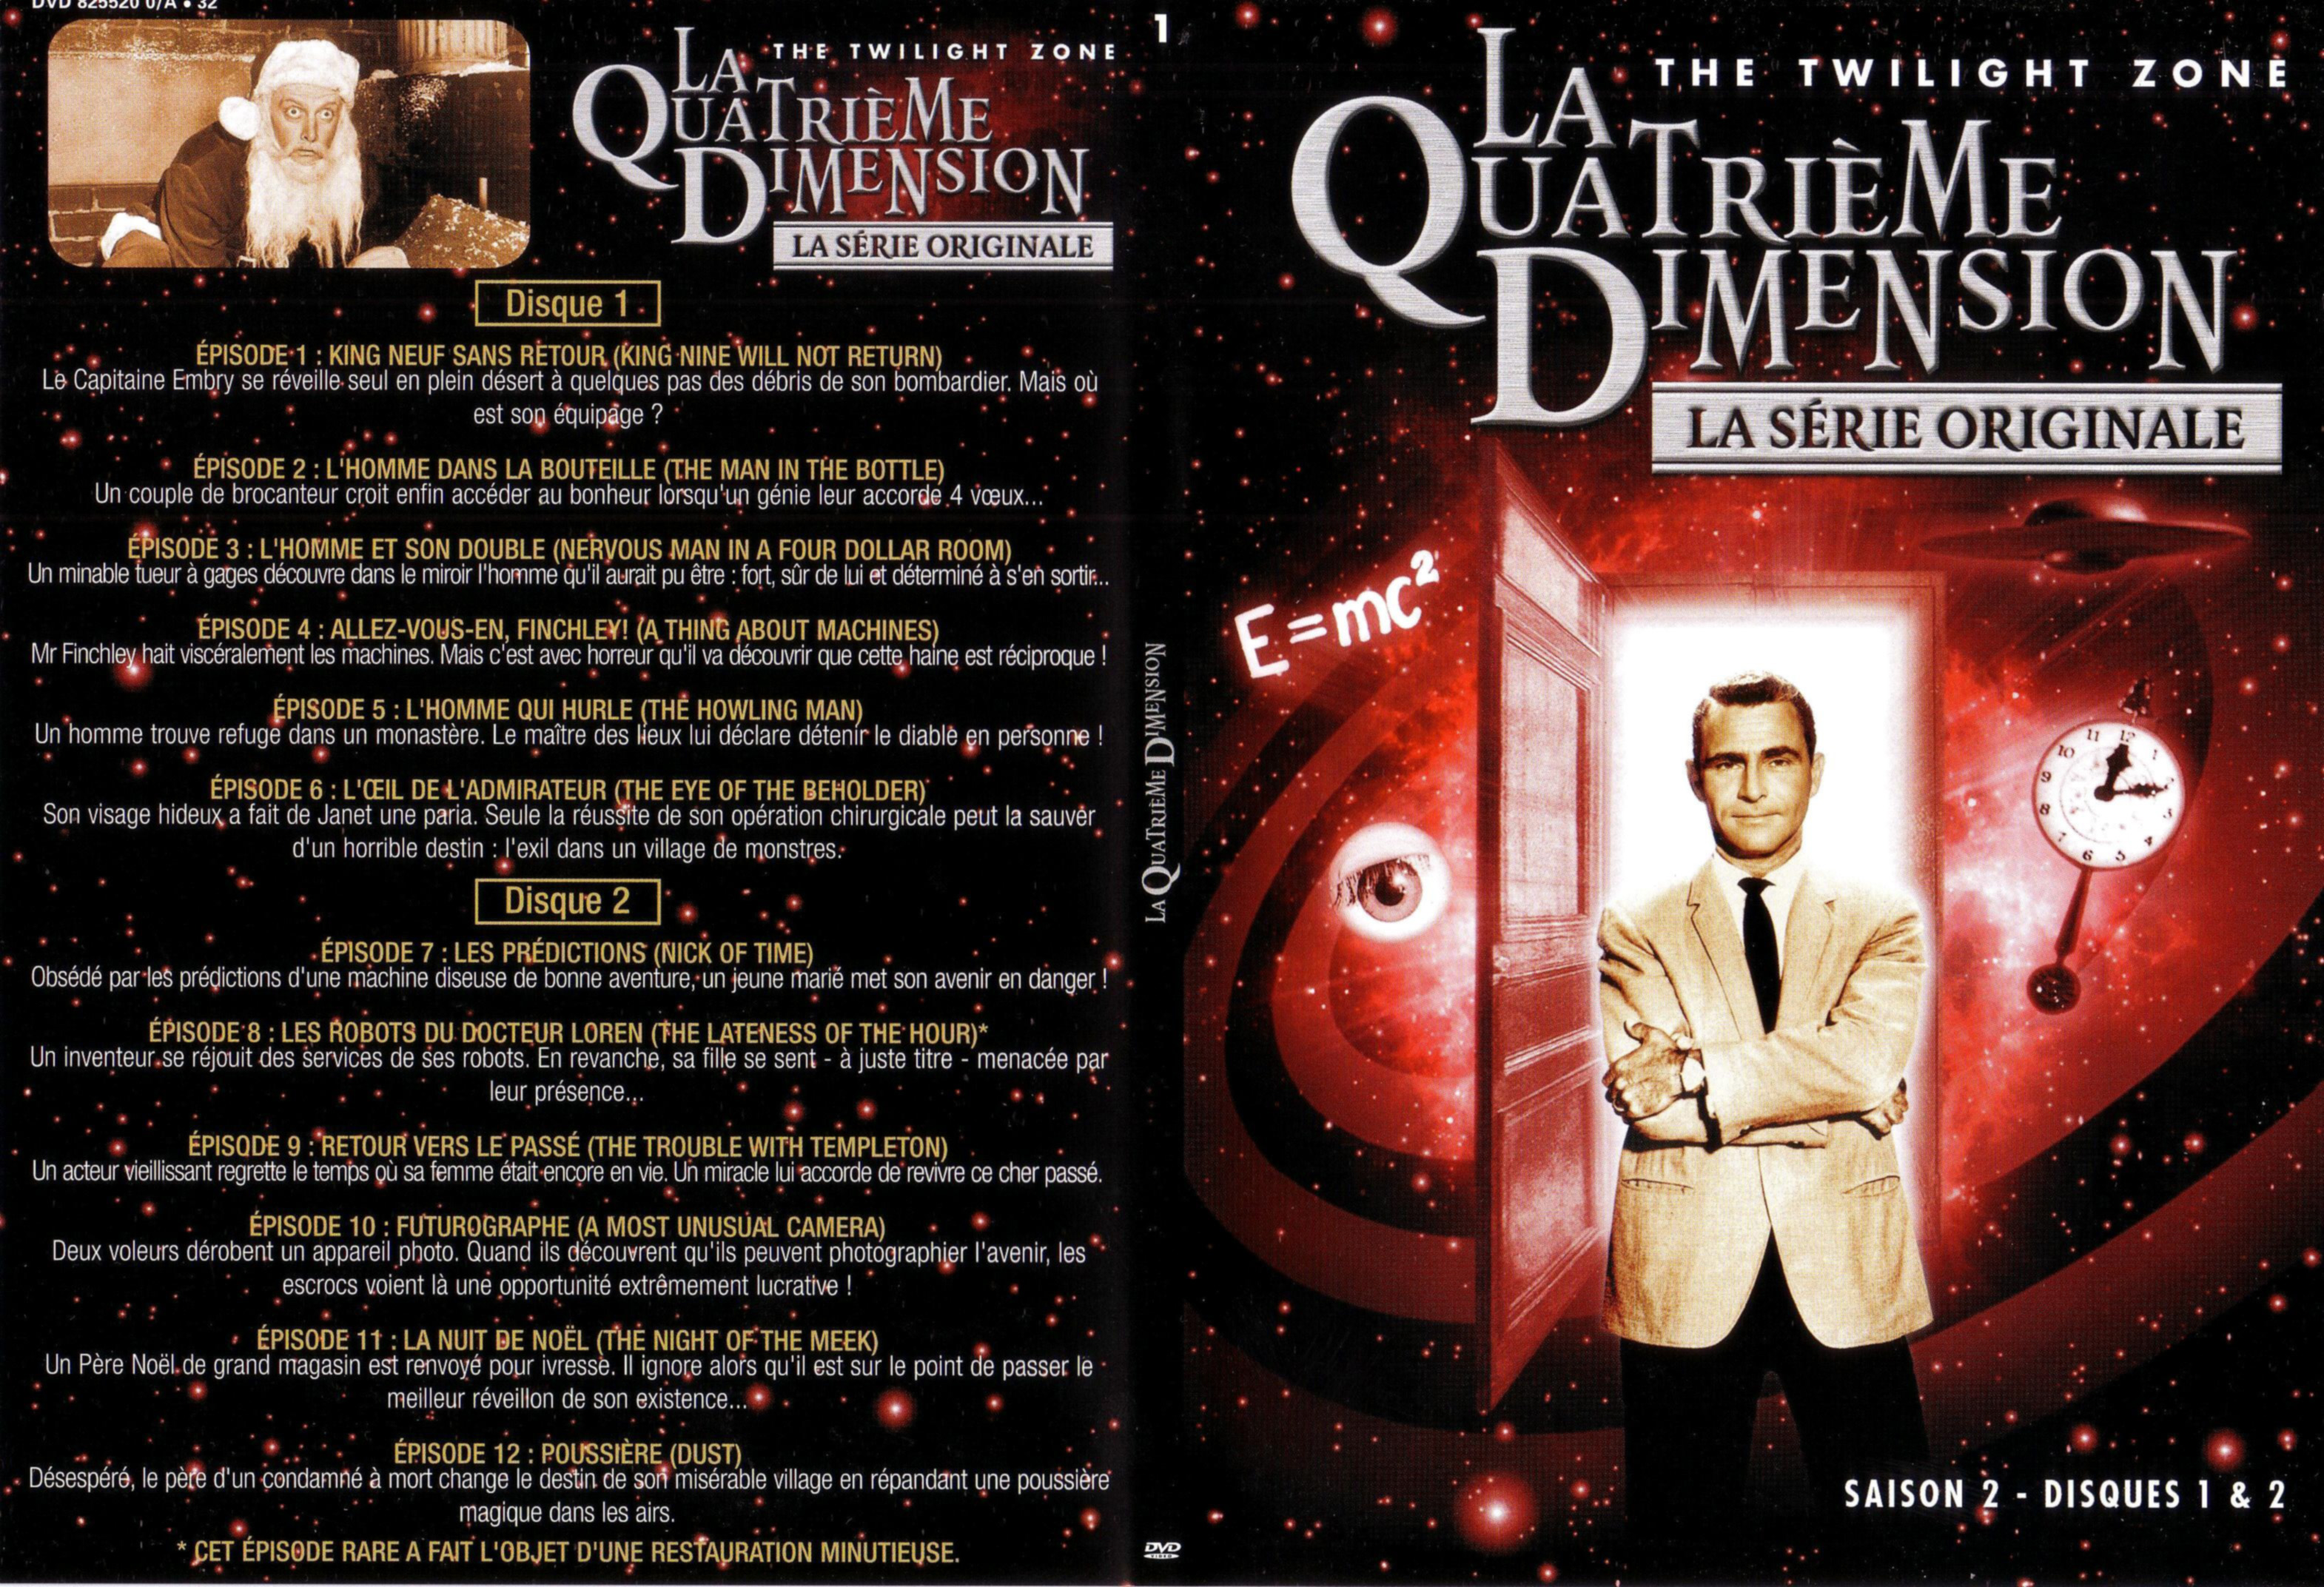 Jaquette DVD La quatrieme dimension saison 2 vol 1